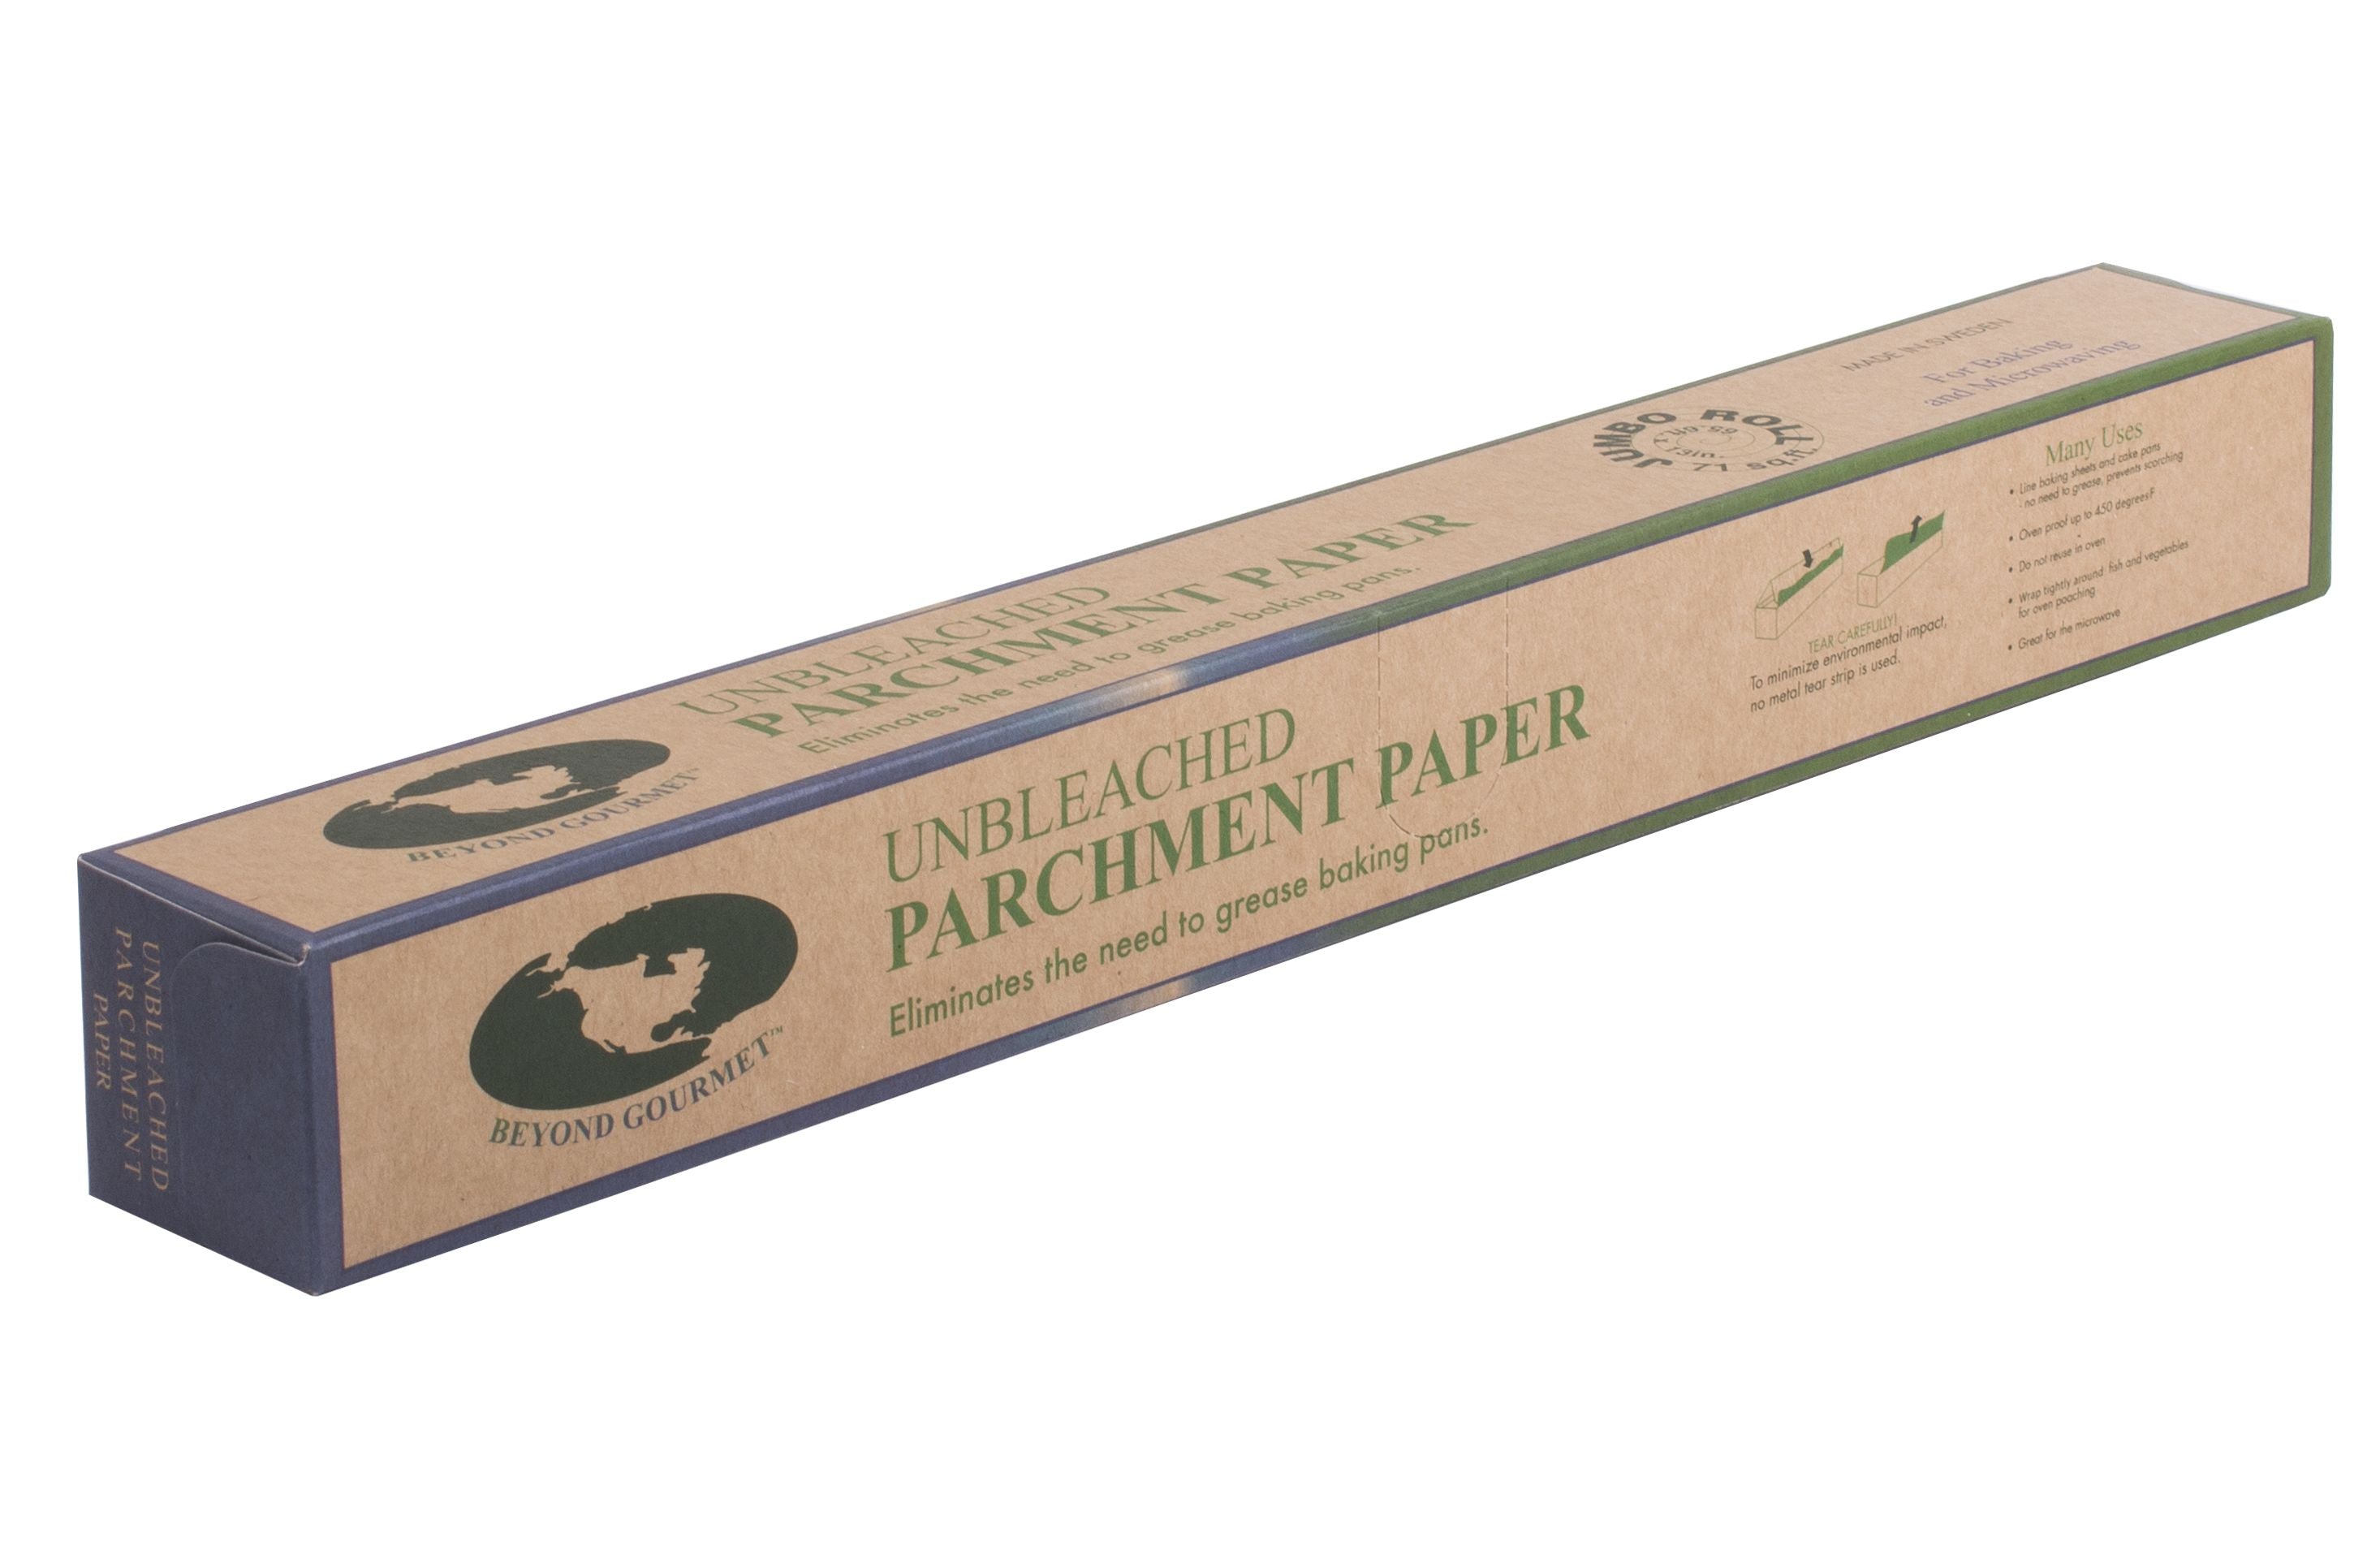 Beyond Gourmet Parchment Paper Unbleached